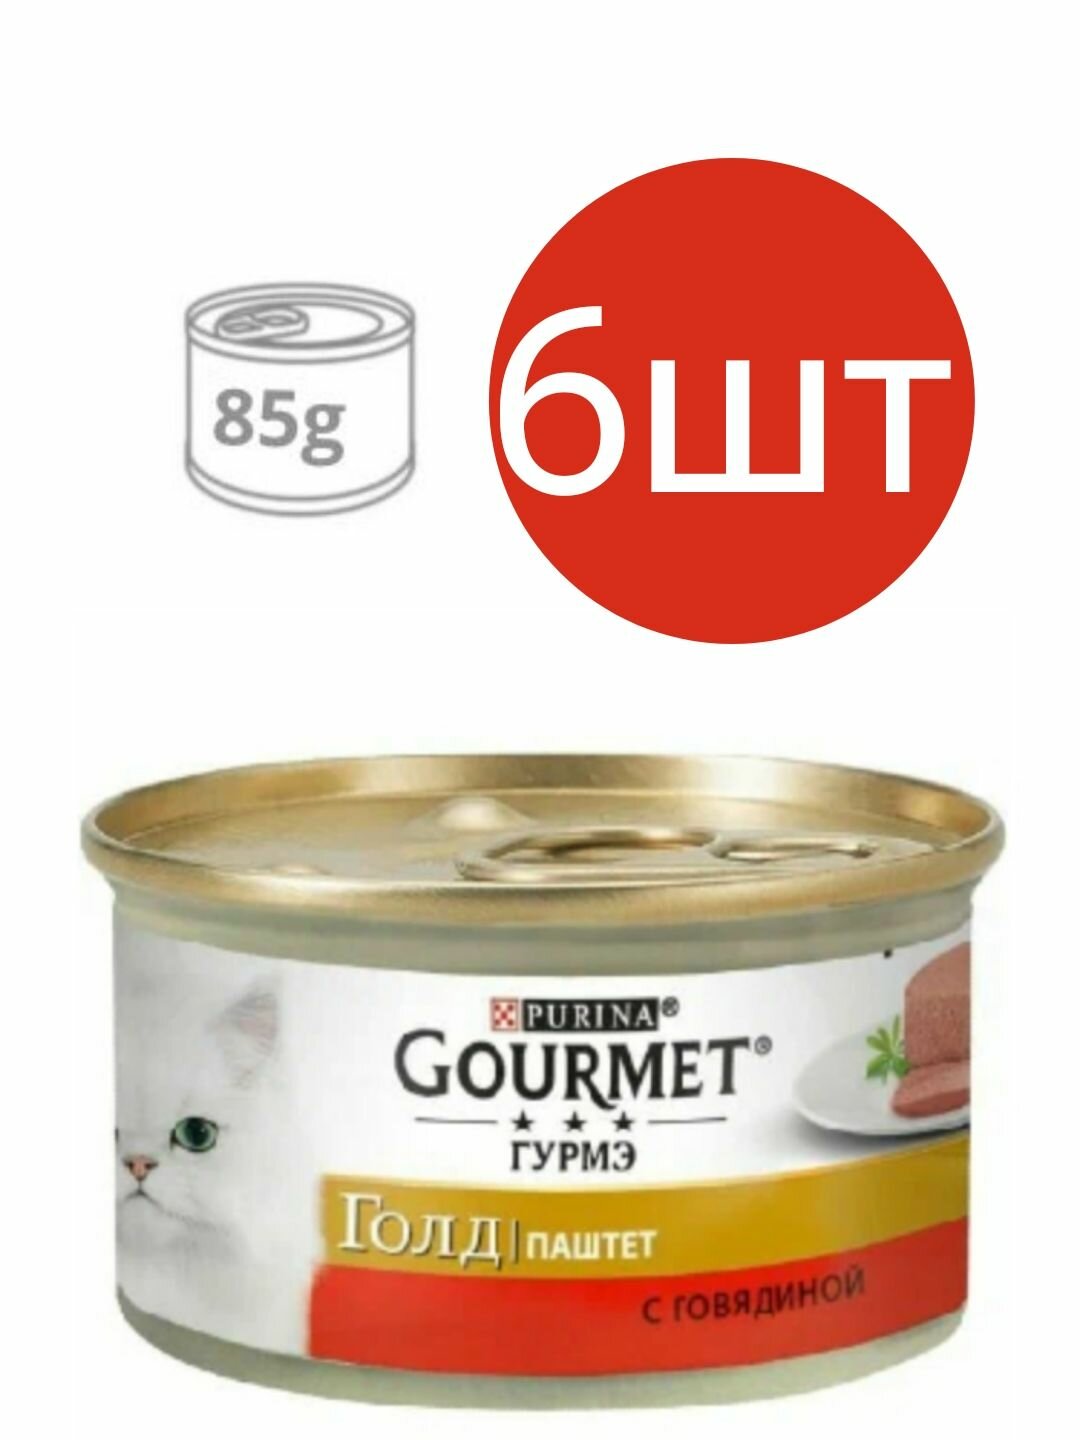 Gourmet Gold для кошек , паштет с говядиной (6шт по 85г)